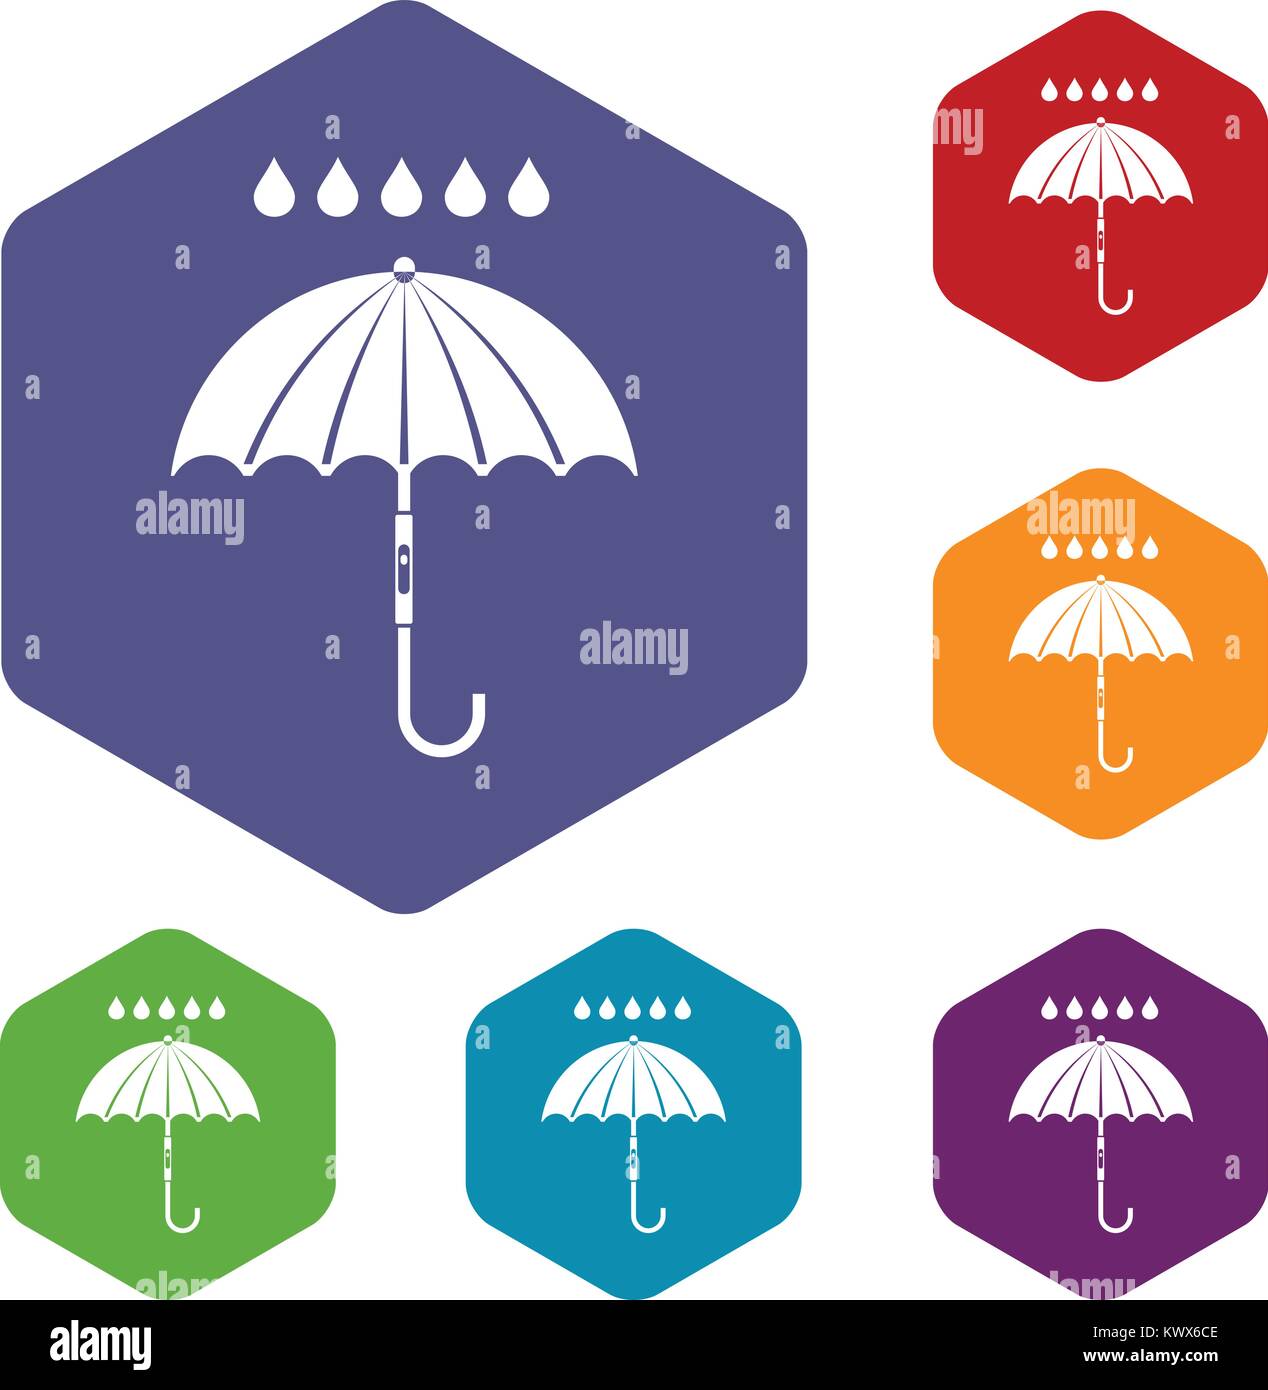 Paraguas y gotas de lluvia iconos en rombos en distintos colores aislado sobre fondo blanco. Ilustración del Vector